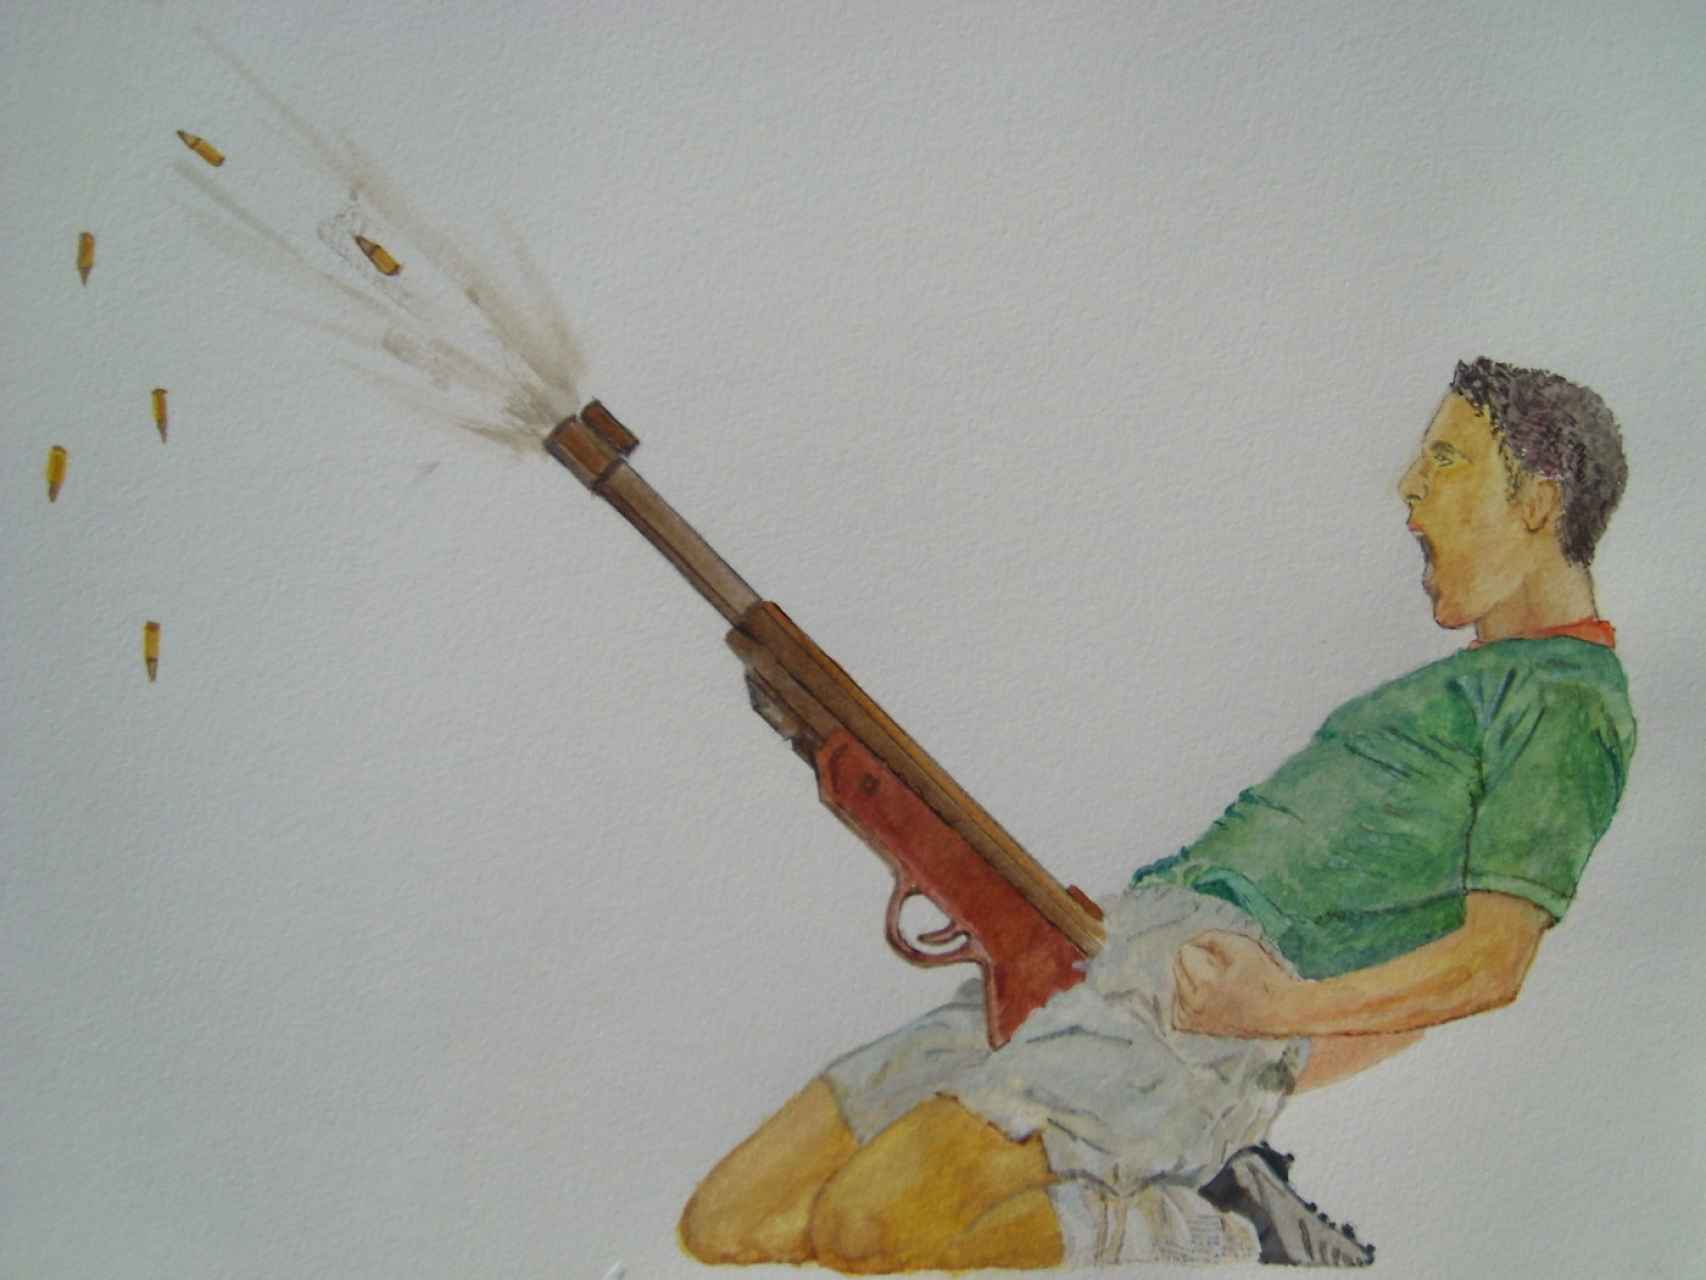 La obra Jerk off, del artista Ferhat Özgür, perseguido por el gobierno turco.